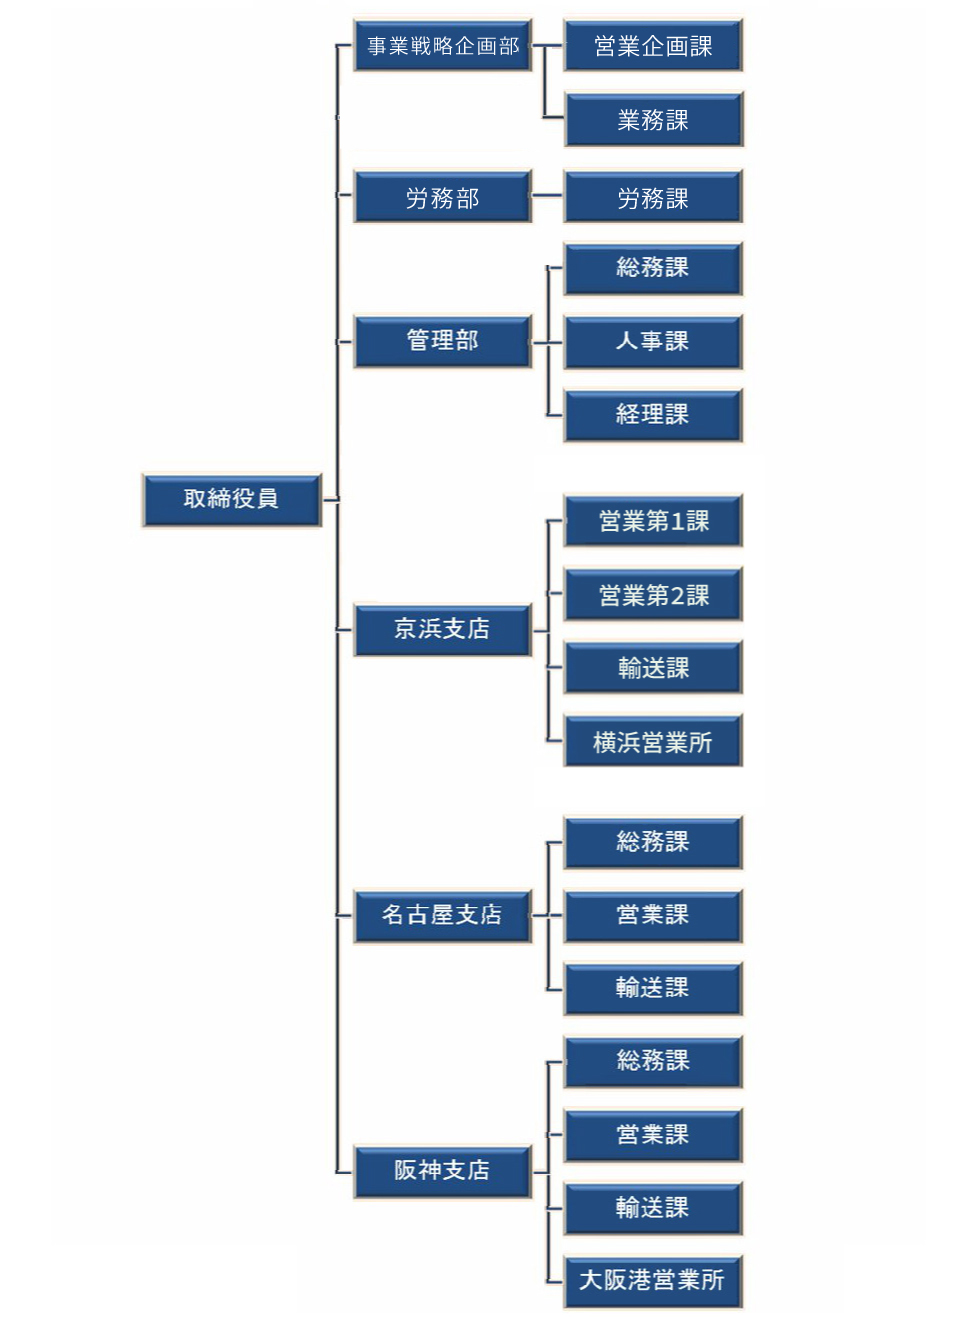 日本コンテナ輸送組織図